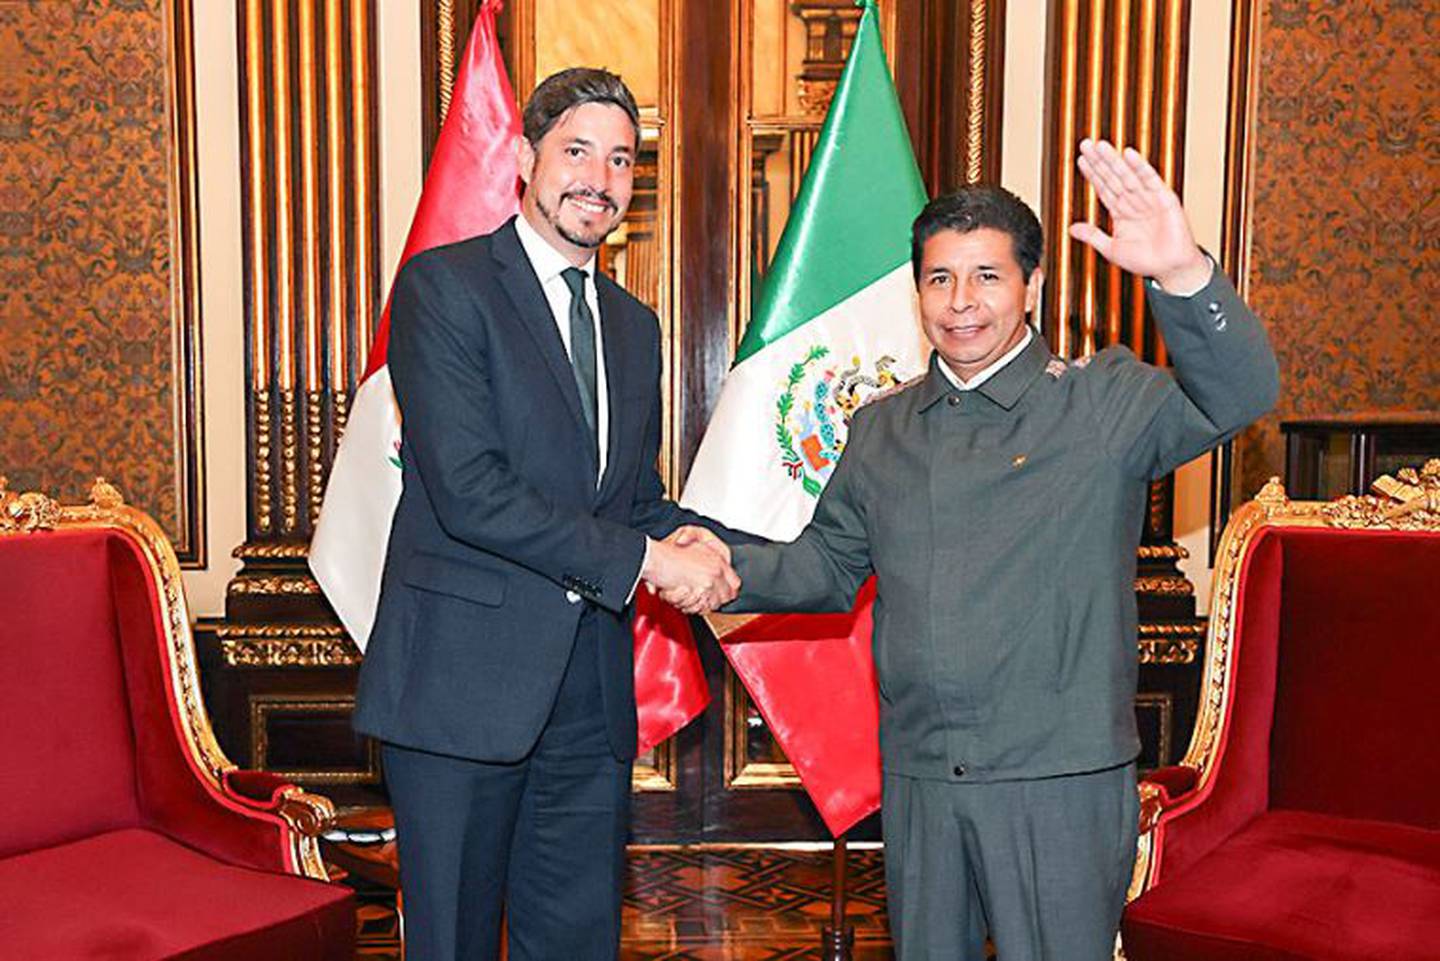 Pablo Monroy Conesa, en la foto, es el embajador de México en Perú. Deberá retirarse del país en las siguientes 72 horas.